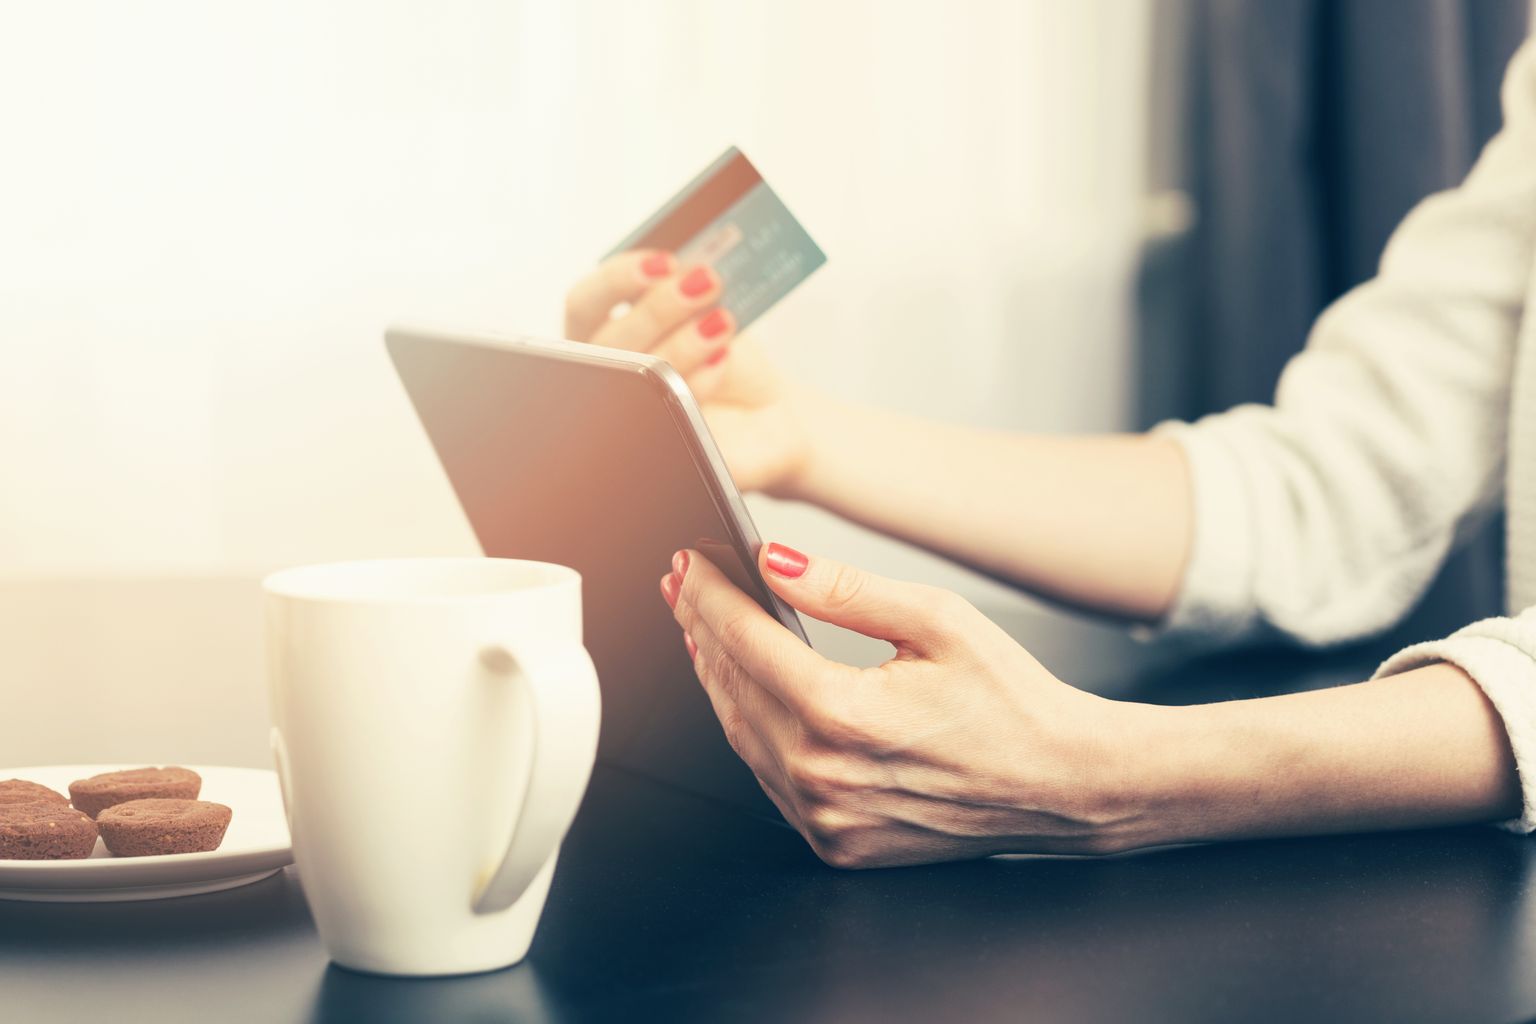 Kui varasemalt võisid mõned ettevõtted internetist krediitkaardiga ostes lisatasu küsida, siis nüüdsest on see keelatud.